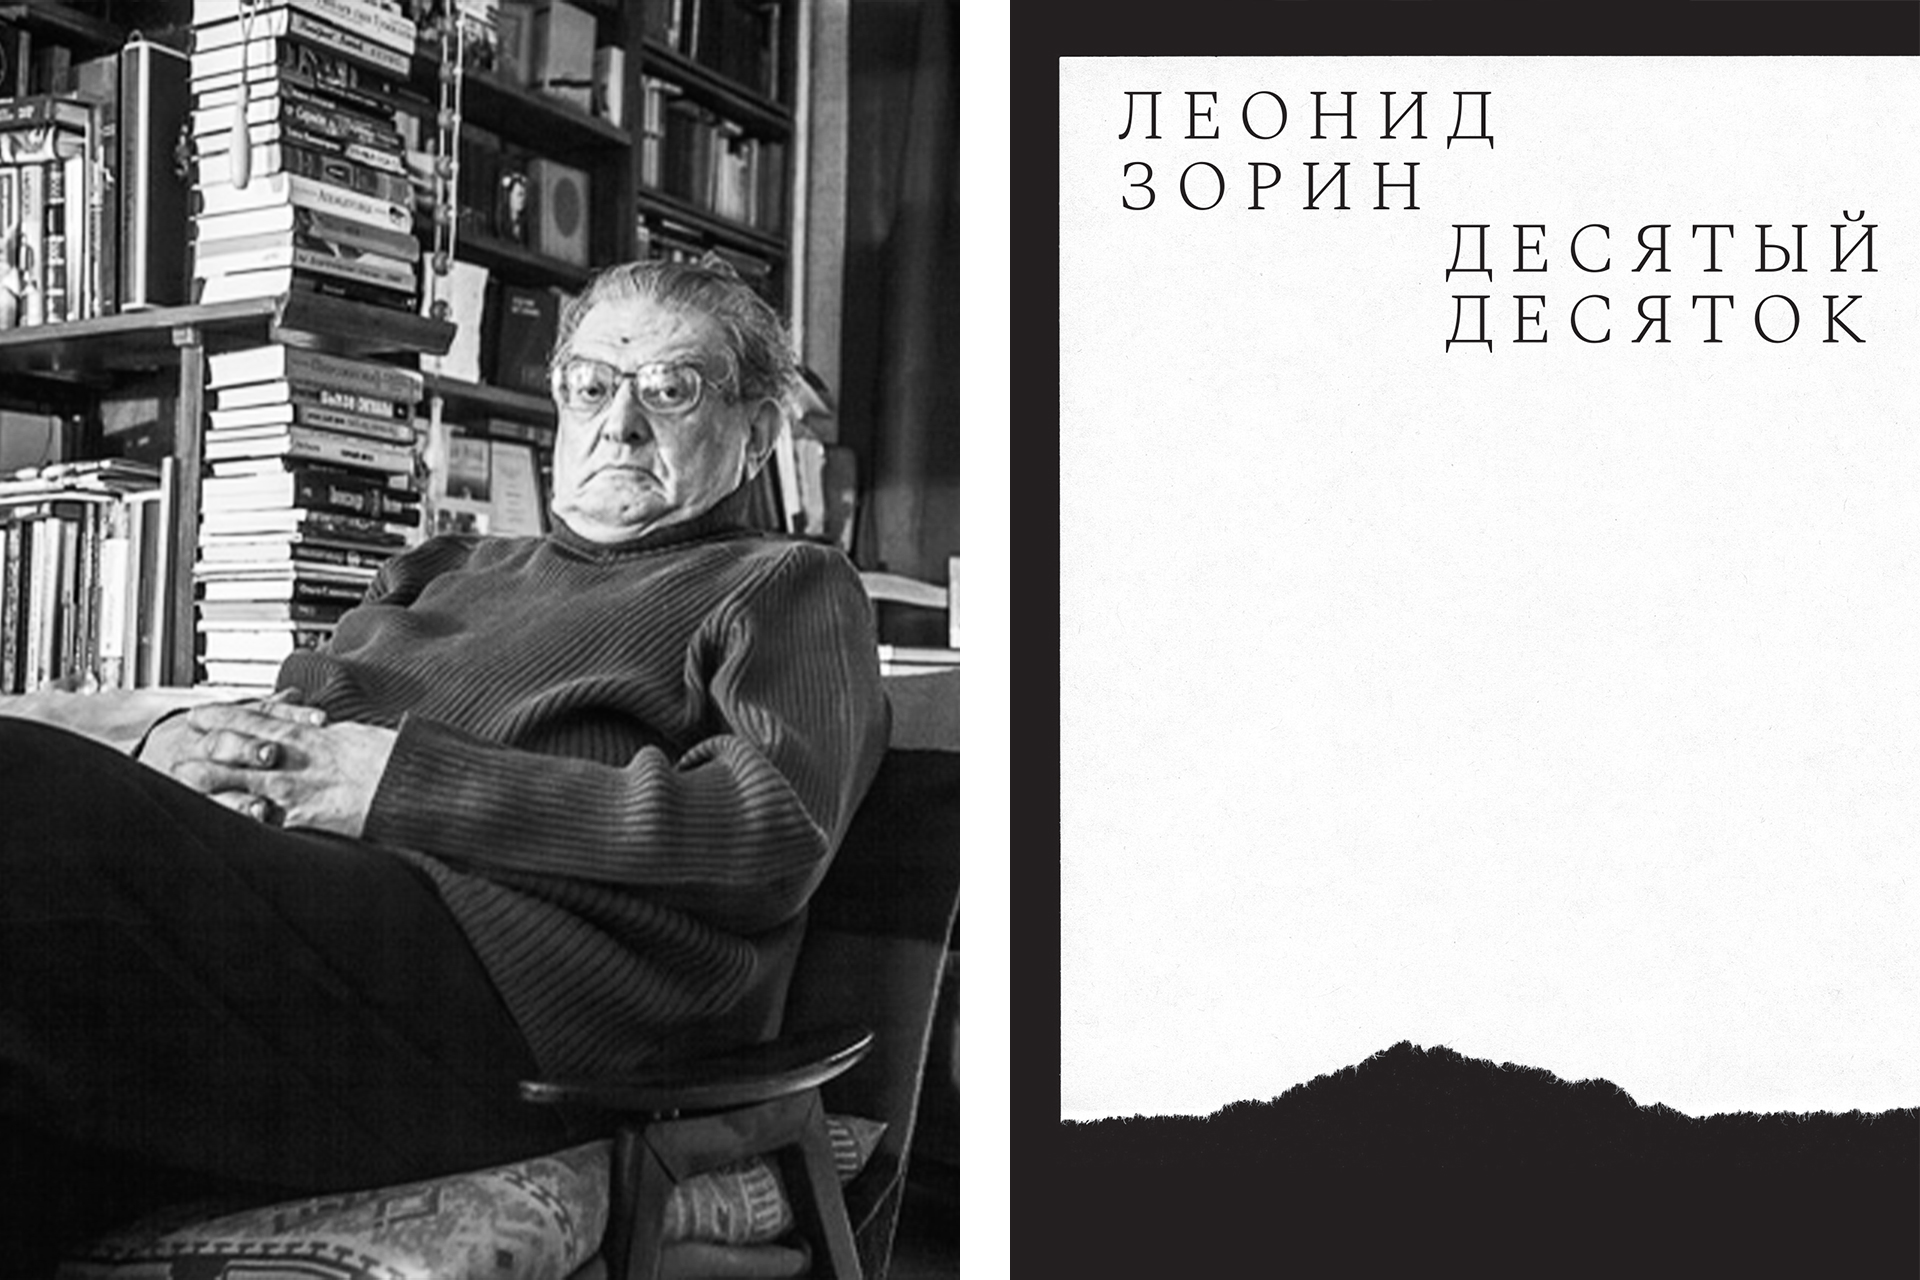 Слева: Леонид Зорин; справа: обложка книги